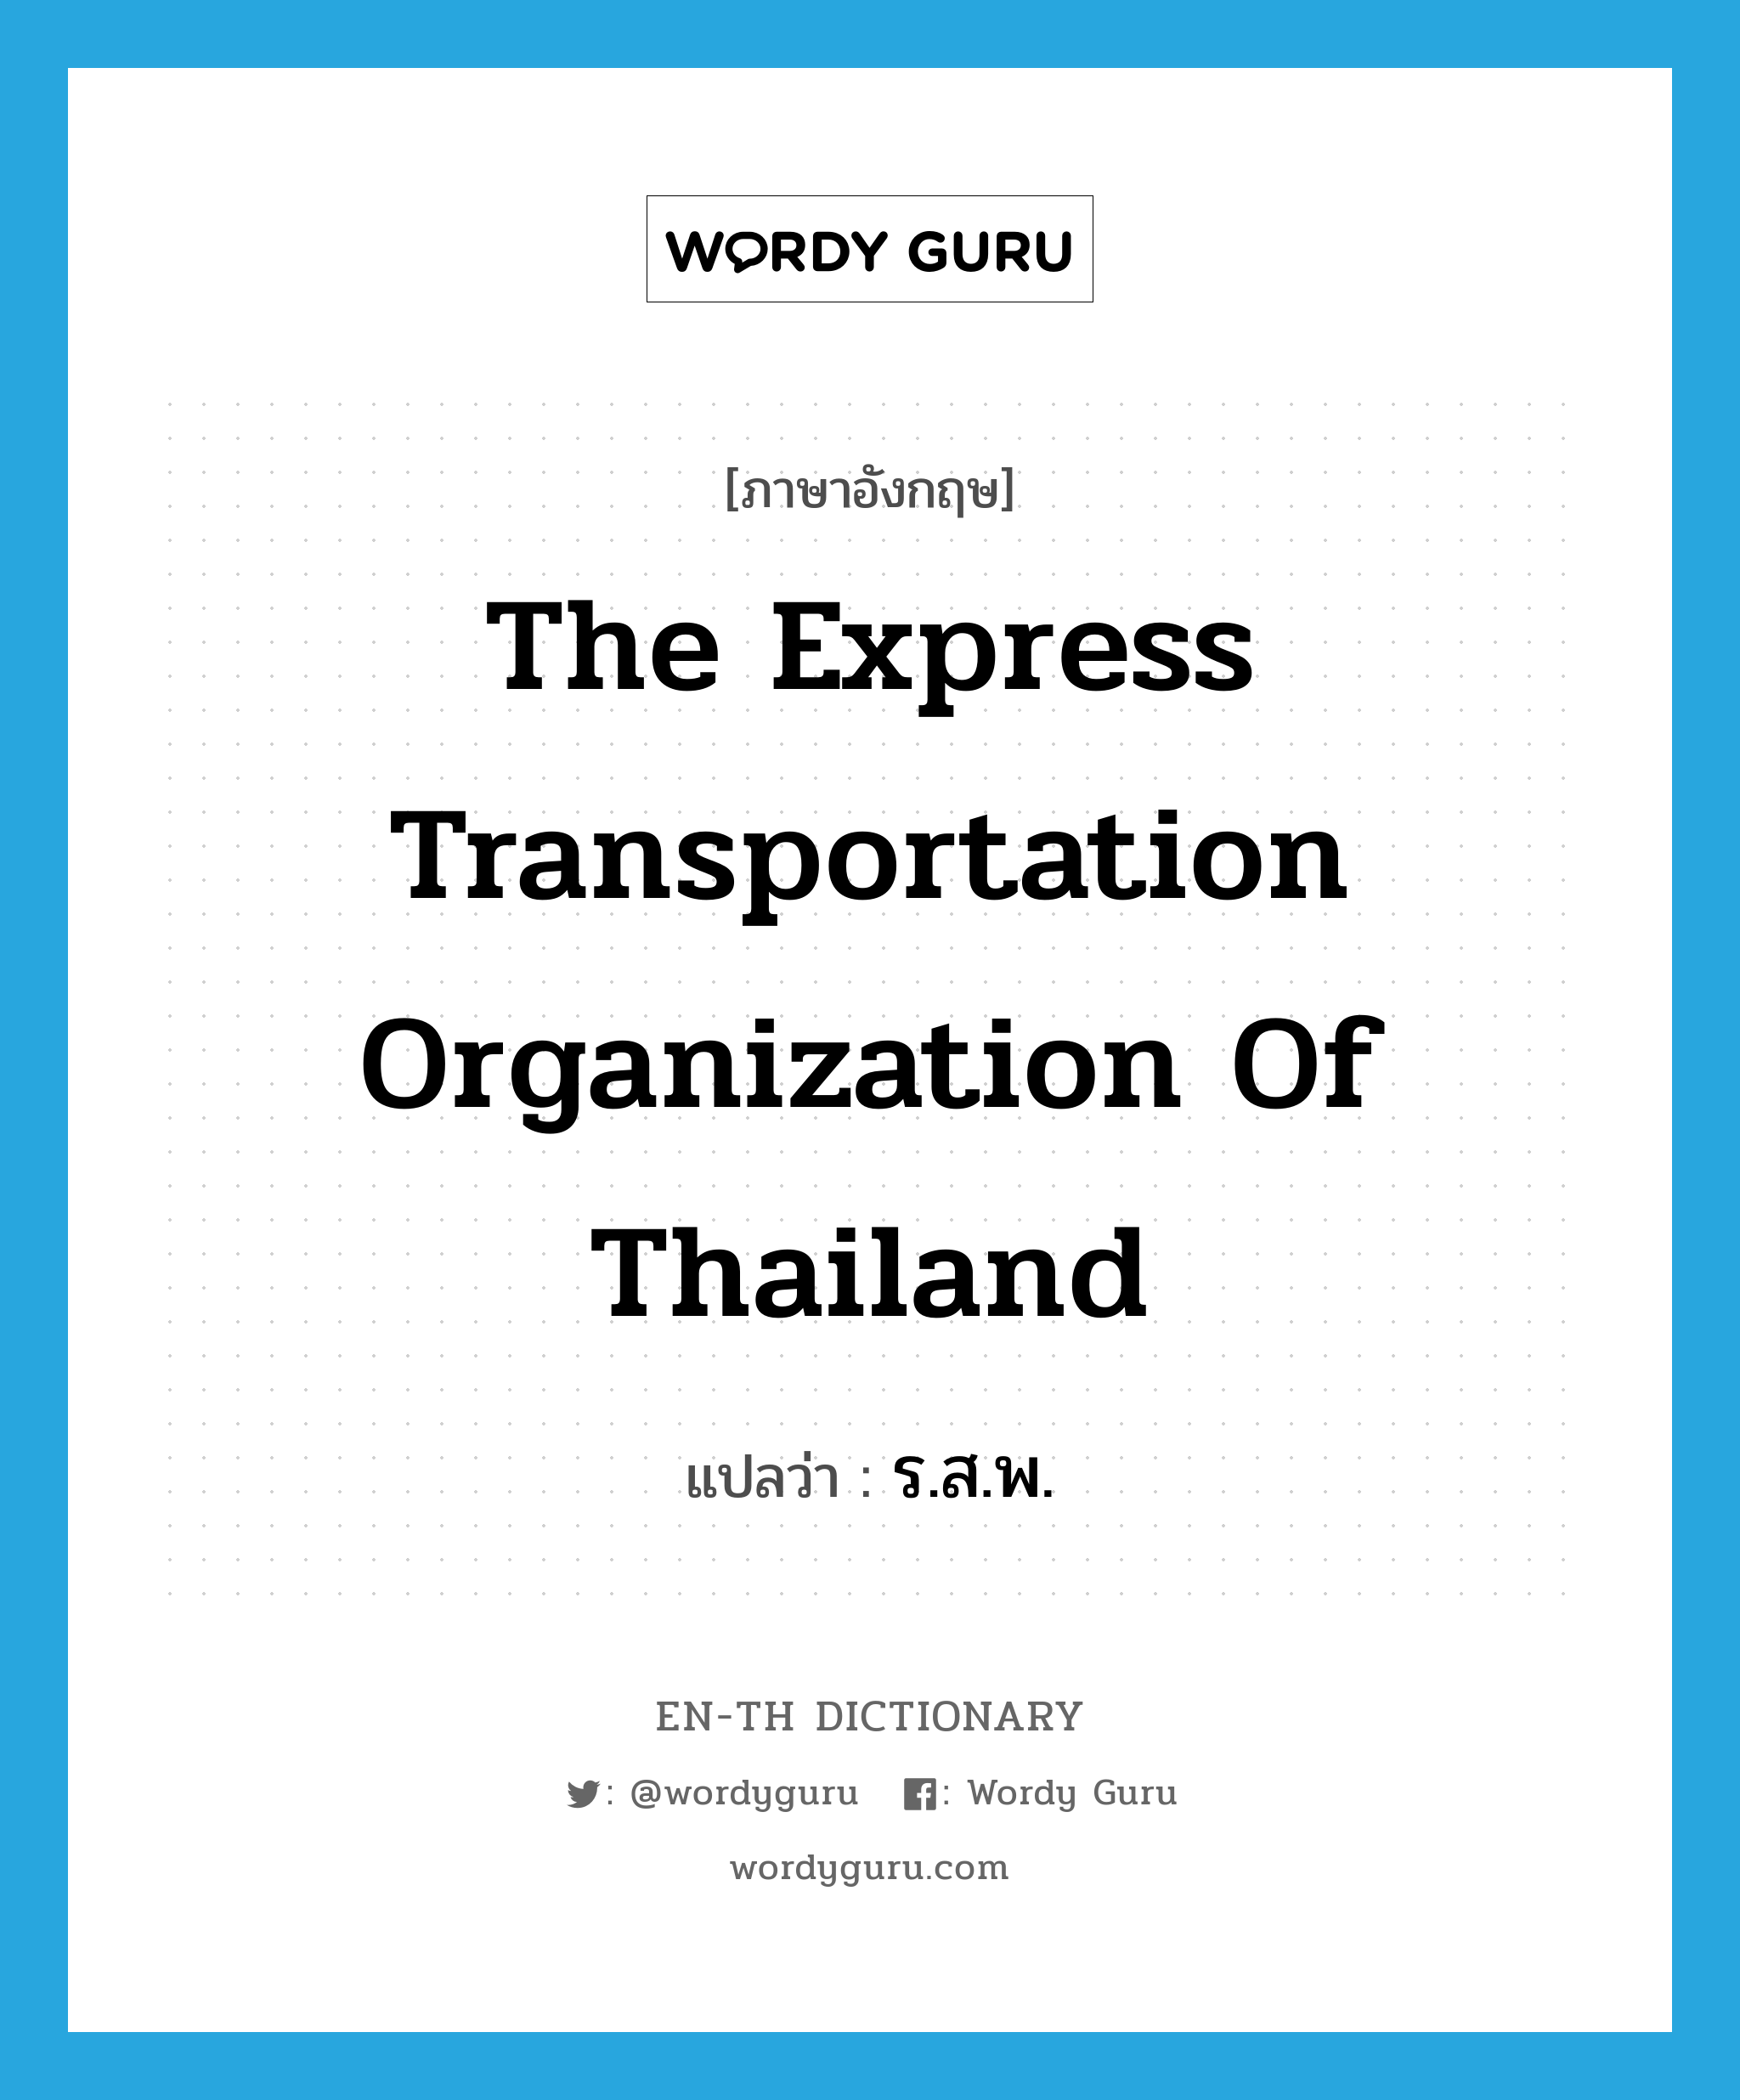 ร.ส.พ. ภาษาอังกฤษ?, คำศัพท์ภาษาอังกฤษ ร.ส.พ. แปลว่า The Express Transportation Organization of Thailand ประเภท N หมวด N